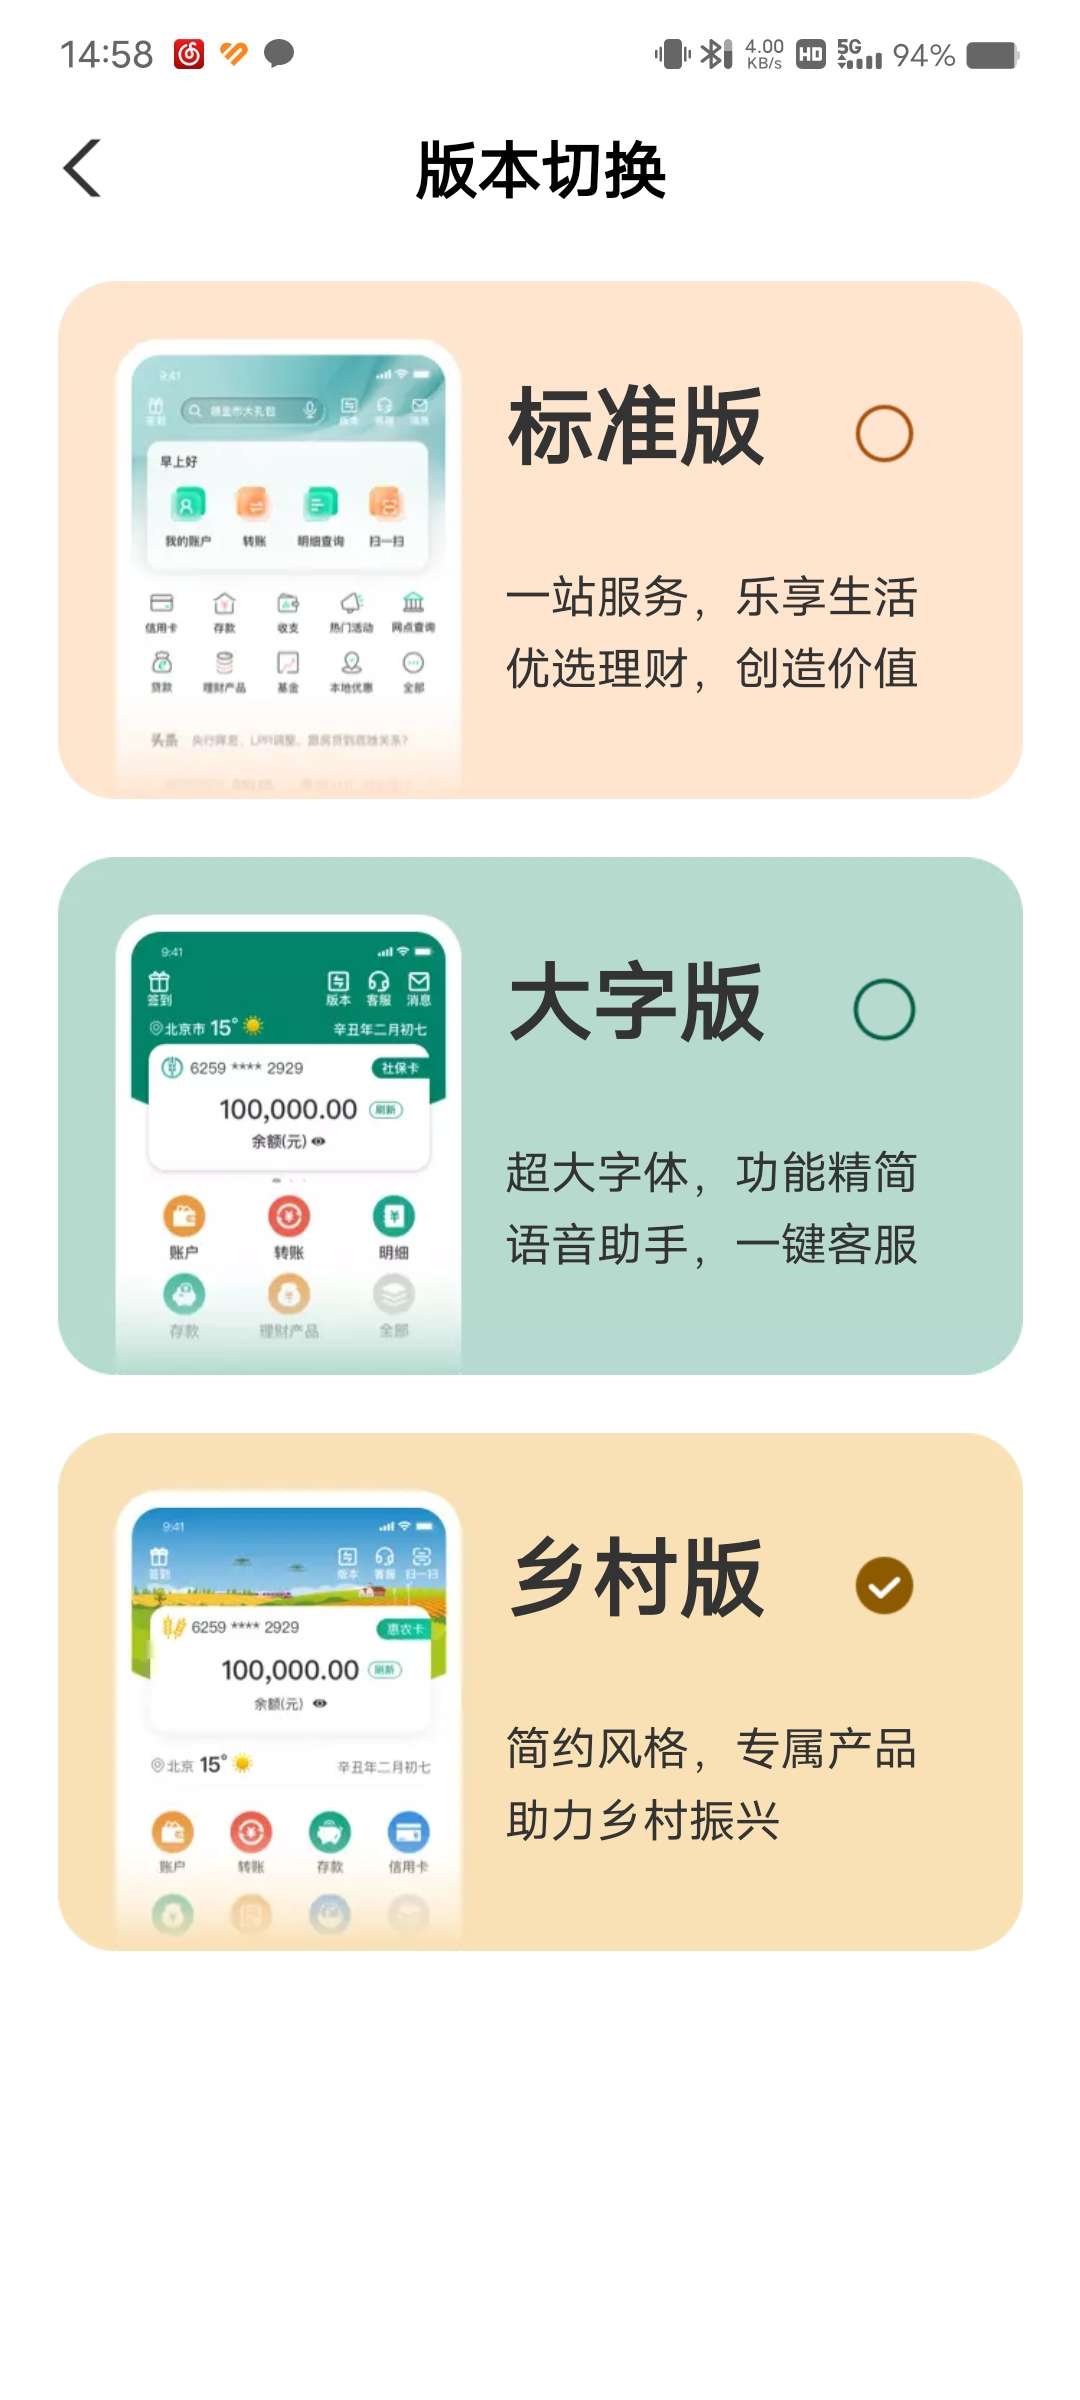 ［现金红包］农行app 安徽省地区 切换乡村版，抽奖应该必中的_福利红包